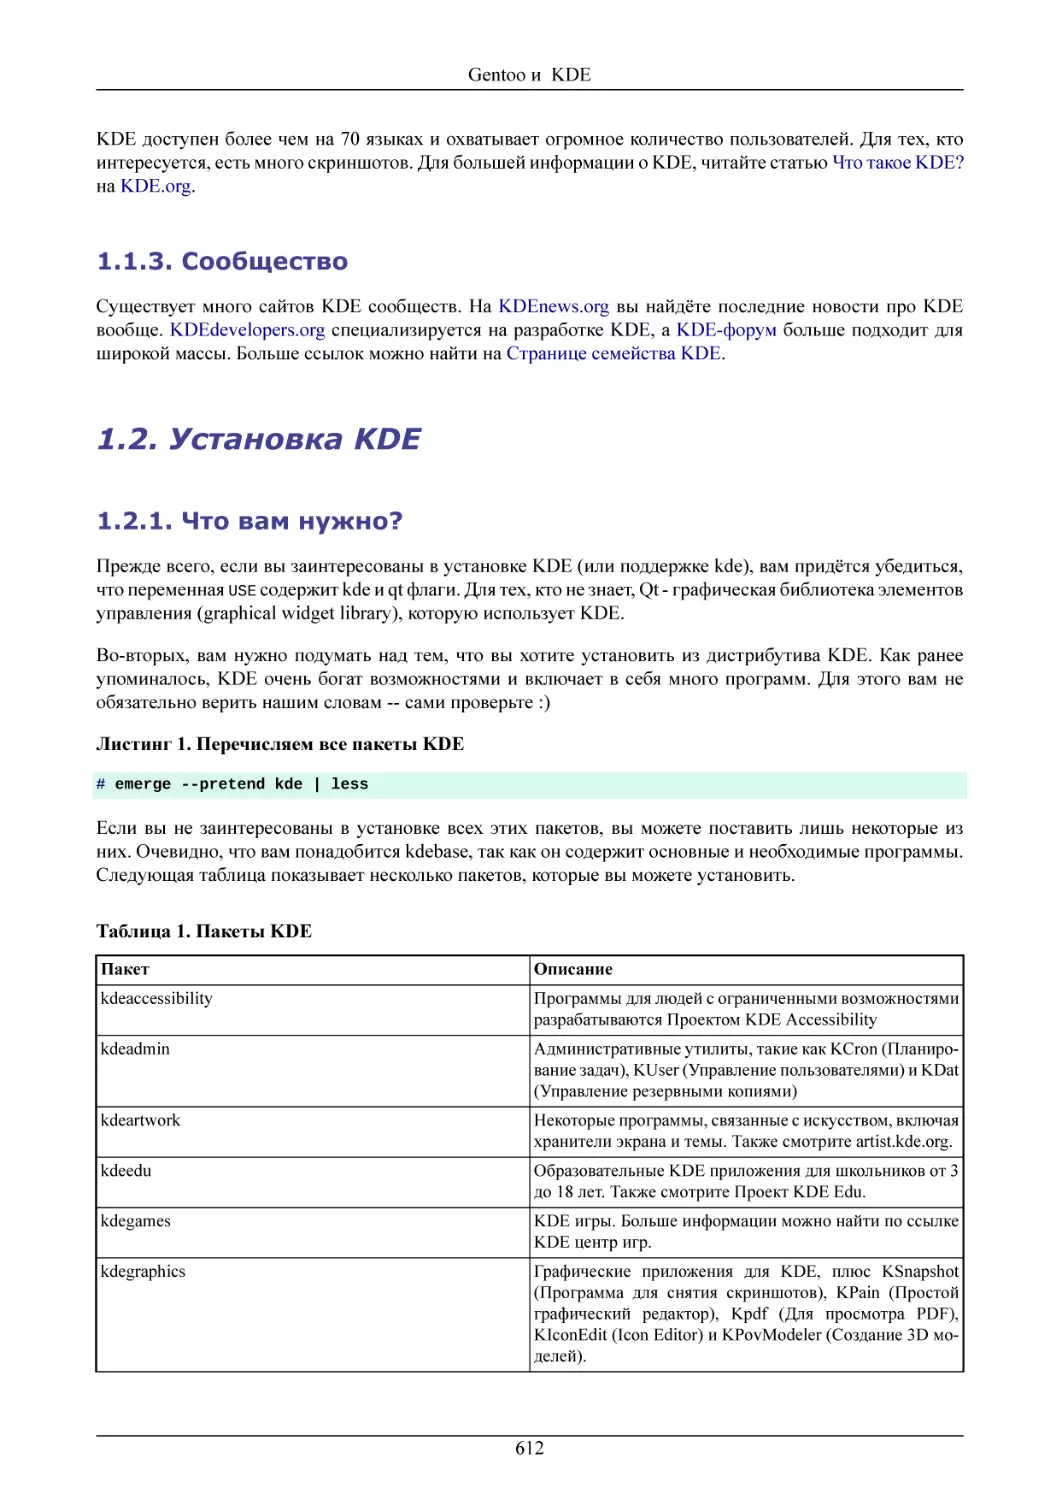 Сообщество
Установка KDE
Что вам нужно?